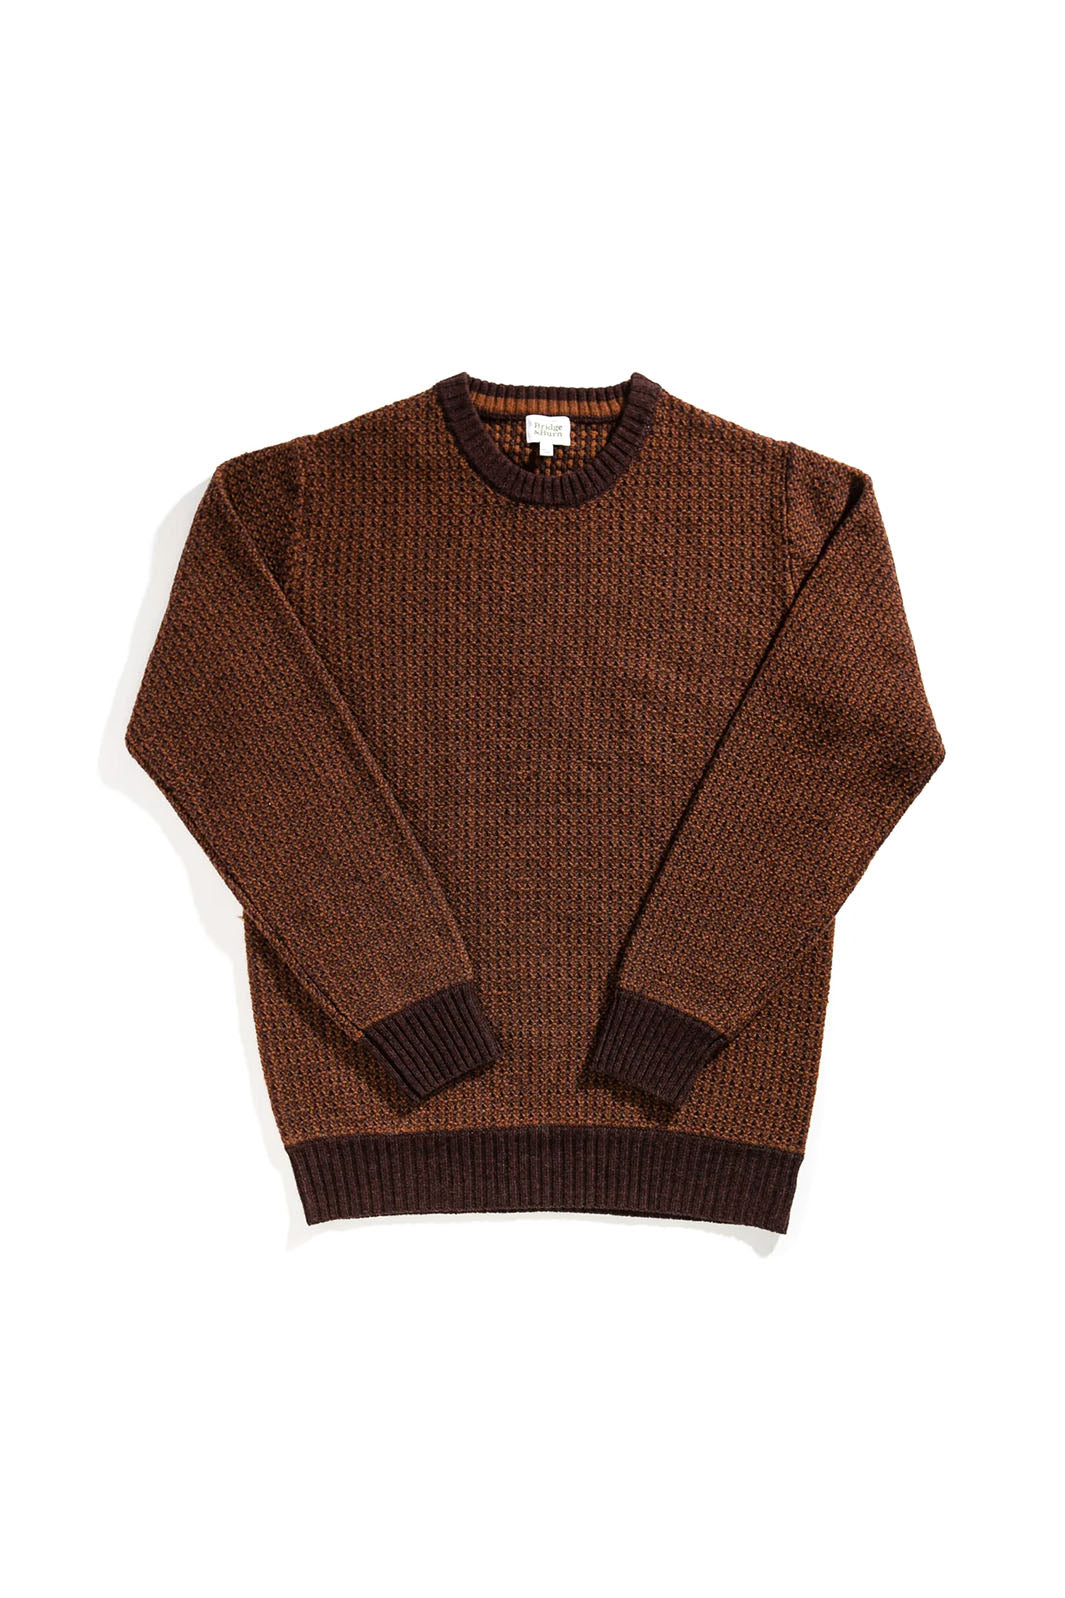 Brighton Sweater - Chesnut